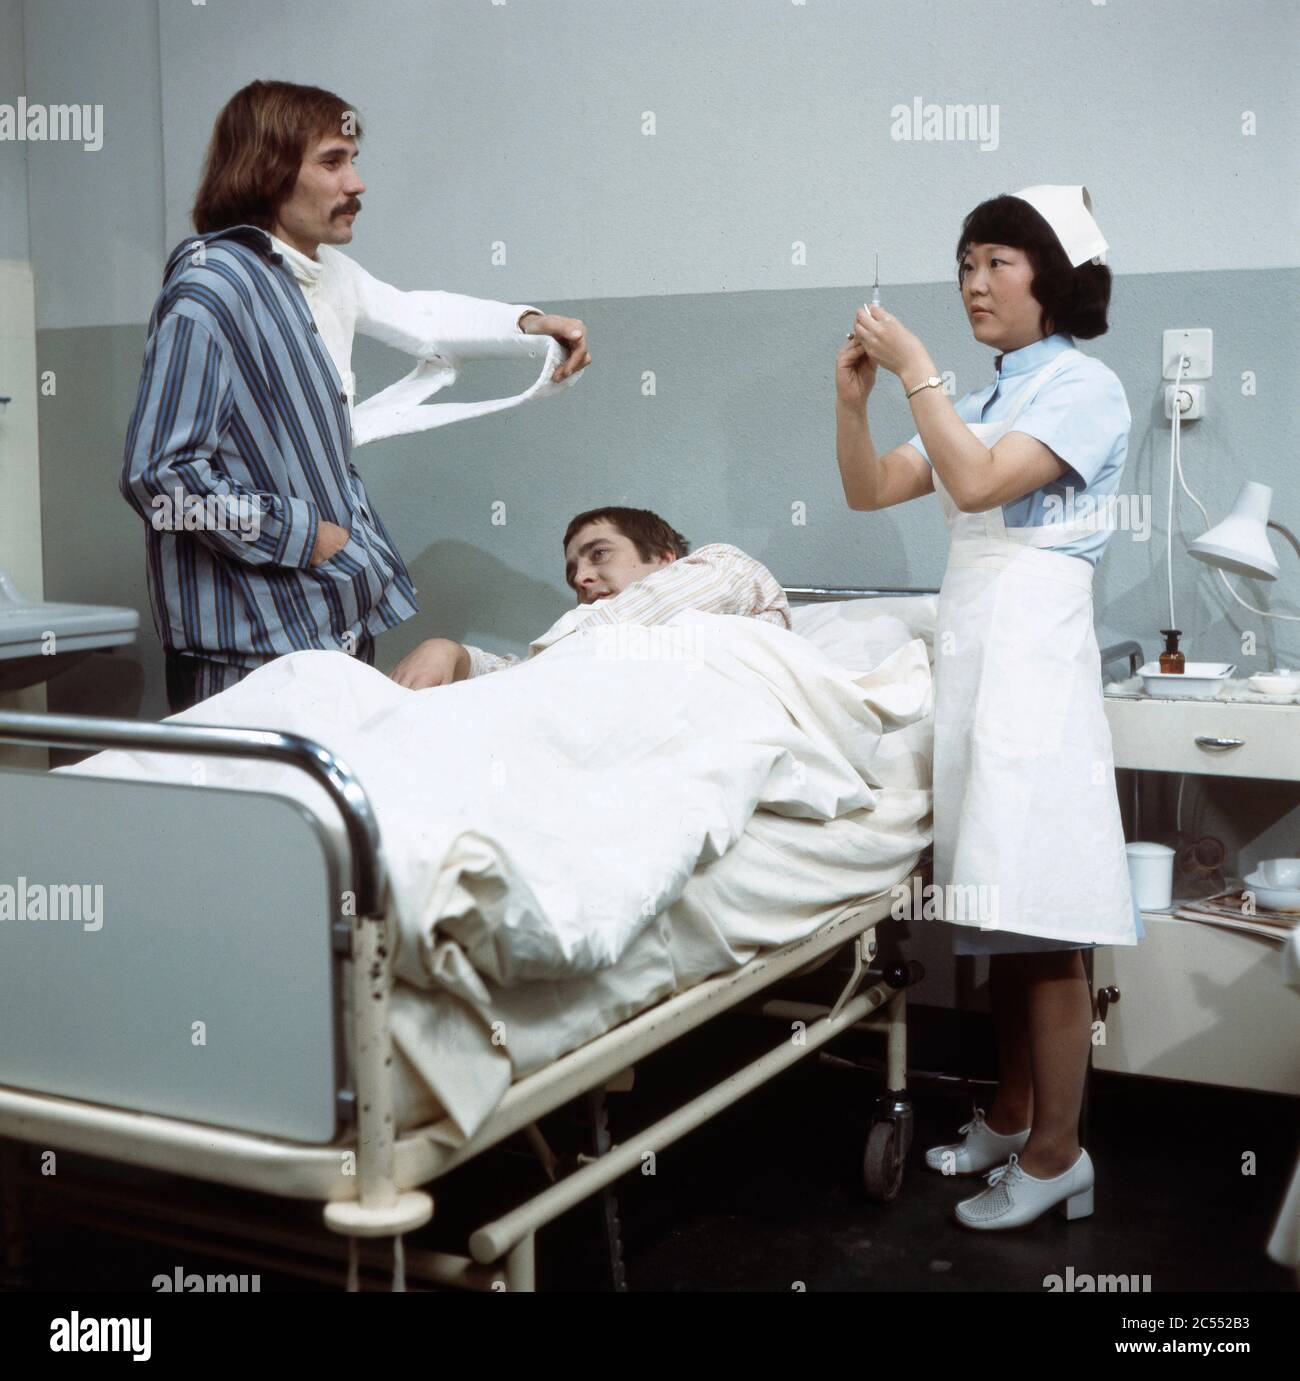 Chong Hi Kim als Krankenpflegerin mit Patienten in Der schwarze Doktor, Regie: Helmut Kissel, 1975. Chong Hi Kim as a nurse with patients in Der schwarze Doktor, Director: Helmut Kissel 1975. Stock Photo